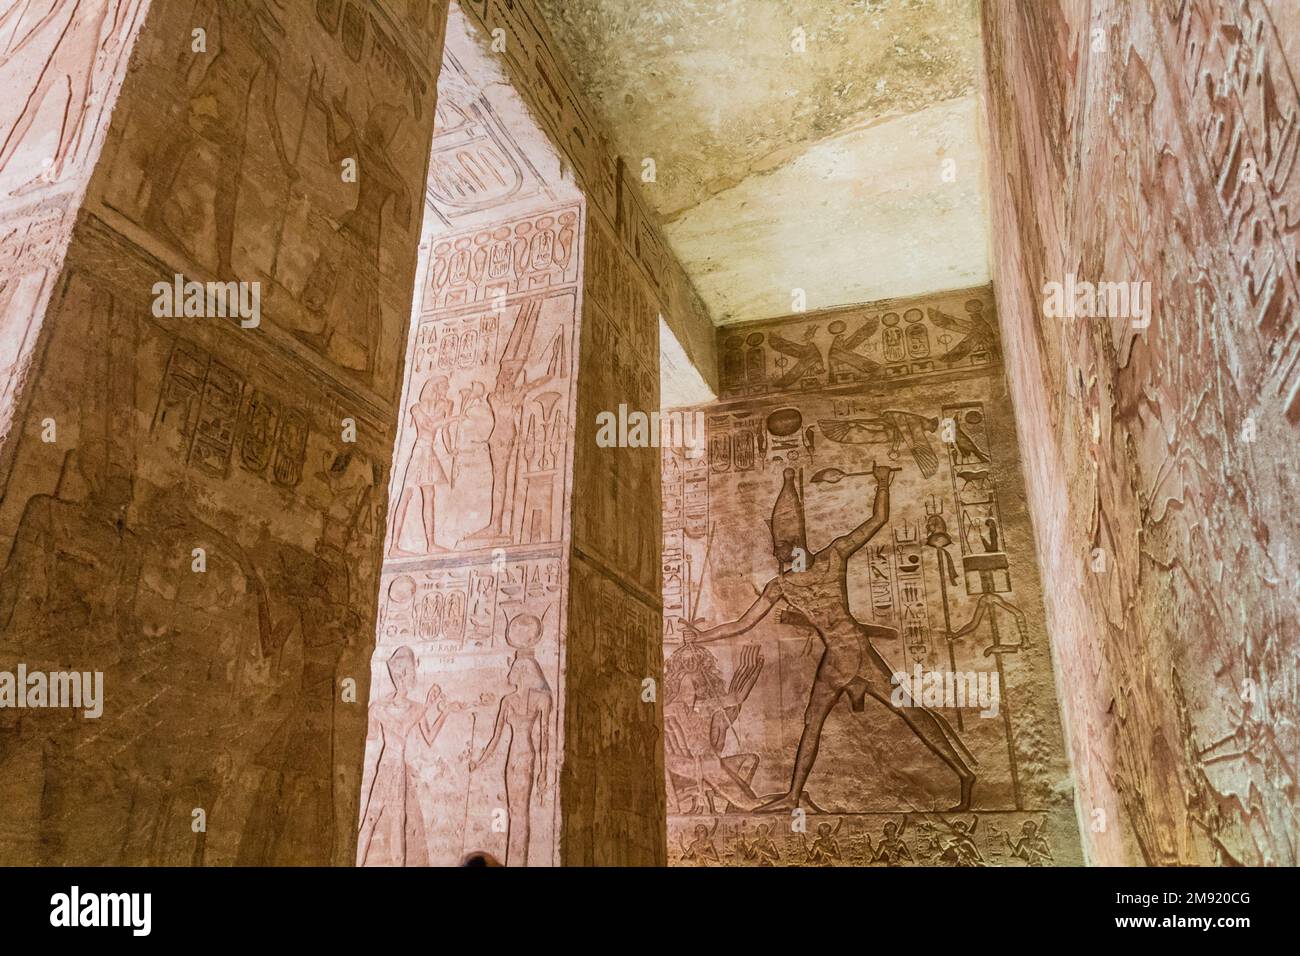 ABU SIMBEL, ÉGYPTE - 22 FÉVRIER 2019 : reliefs muraux d'une scène battůe dans la Grande salle Hypostyle du Grand Temple de Ramesses II à Abu Simbel, Égypte. Banque D'Images